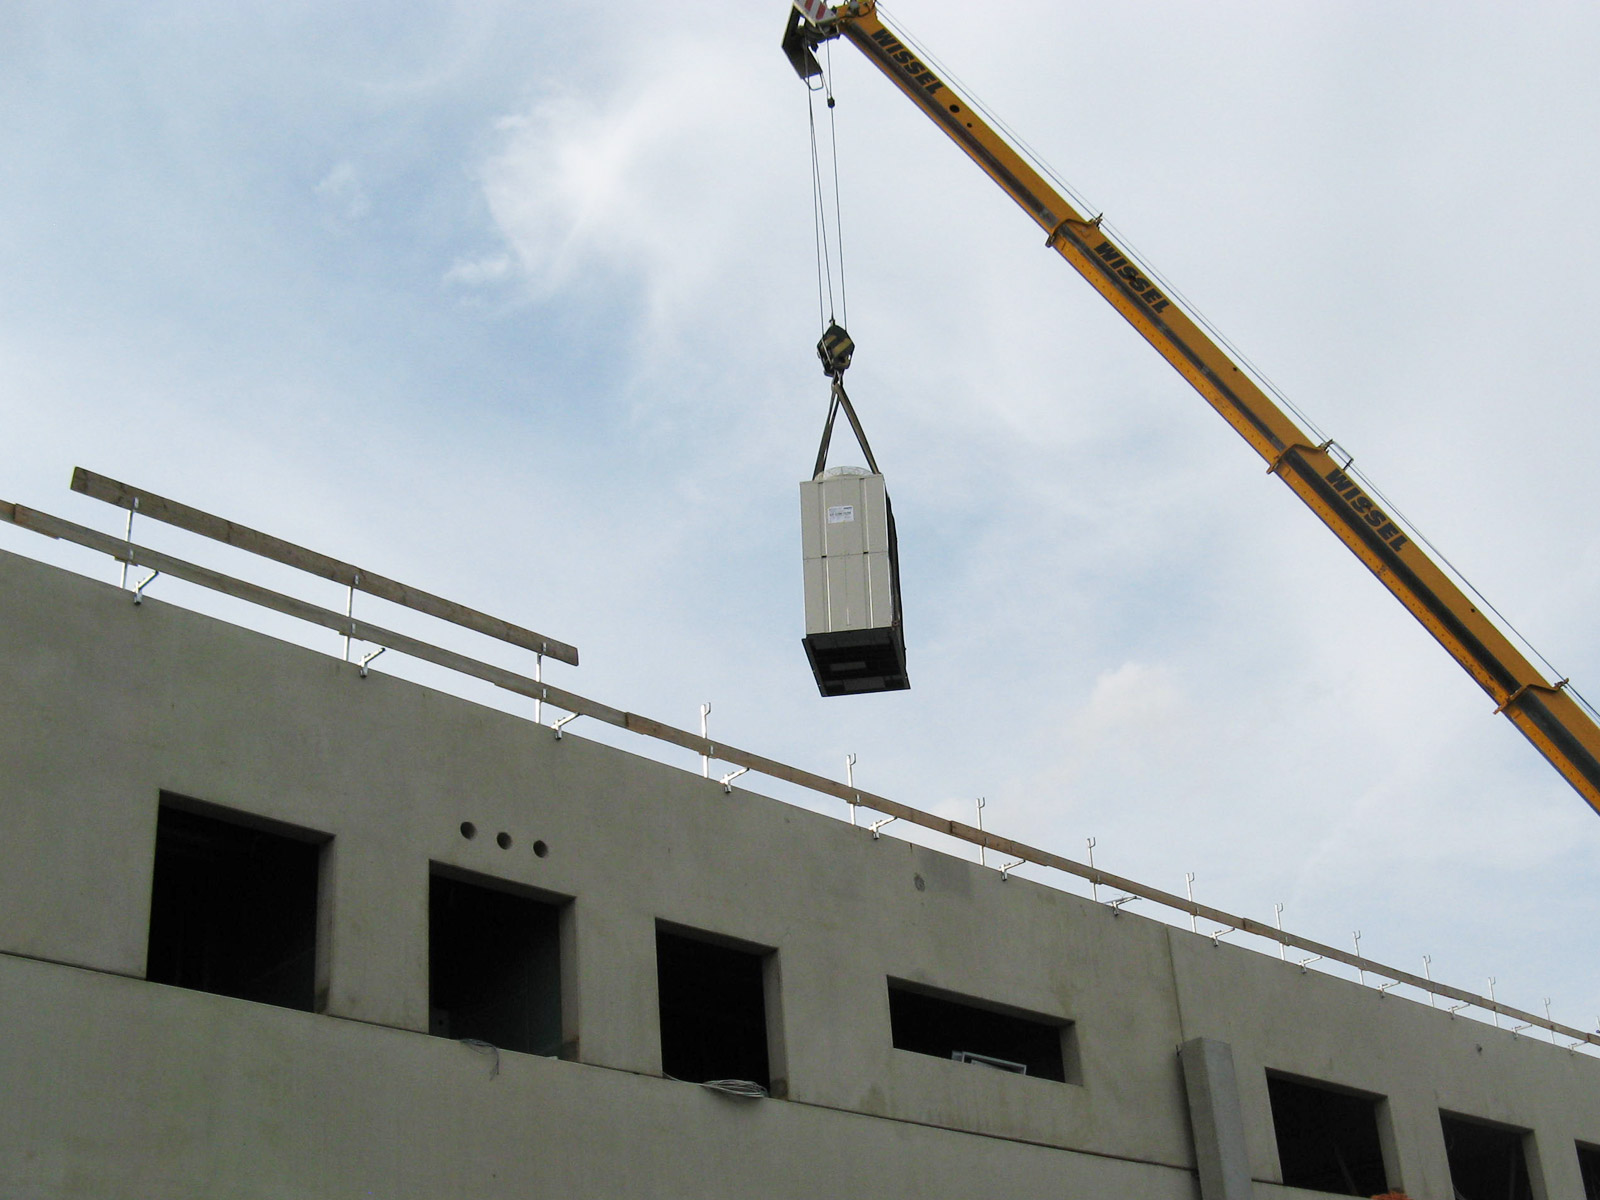 Bauteile einer Klimaanlage von Maik Werner - Kälte und Klimatechnik werden mit Hilfe eines Krans auf ein Dach transportiert